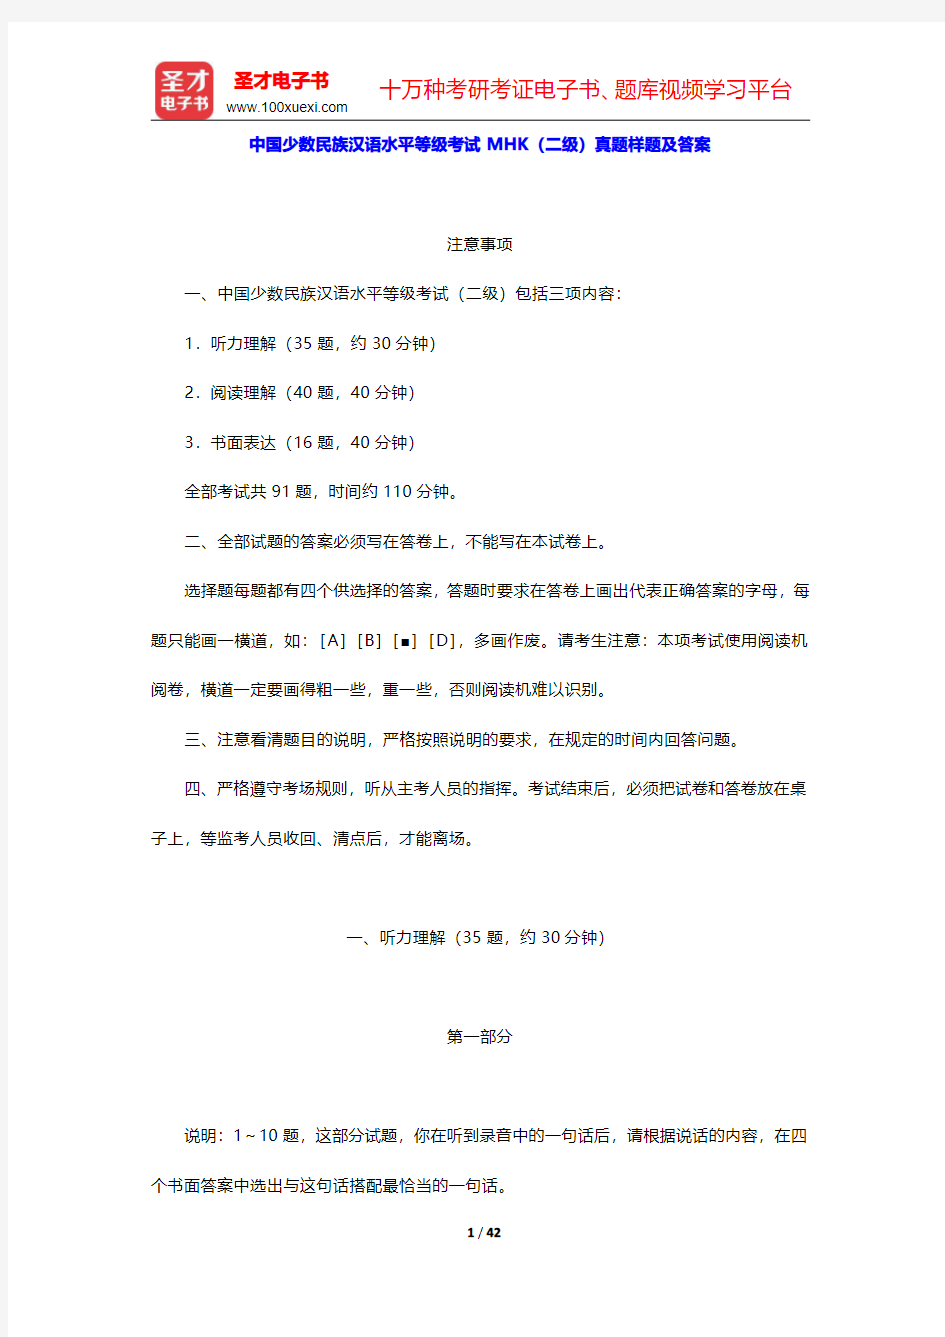 中国少数民族汉语水平等级考试MHK(二级)真题样题及答案【圣才出品】